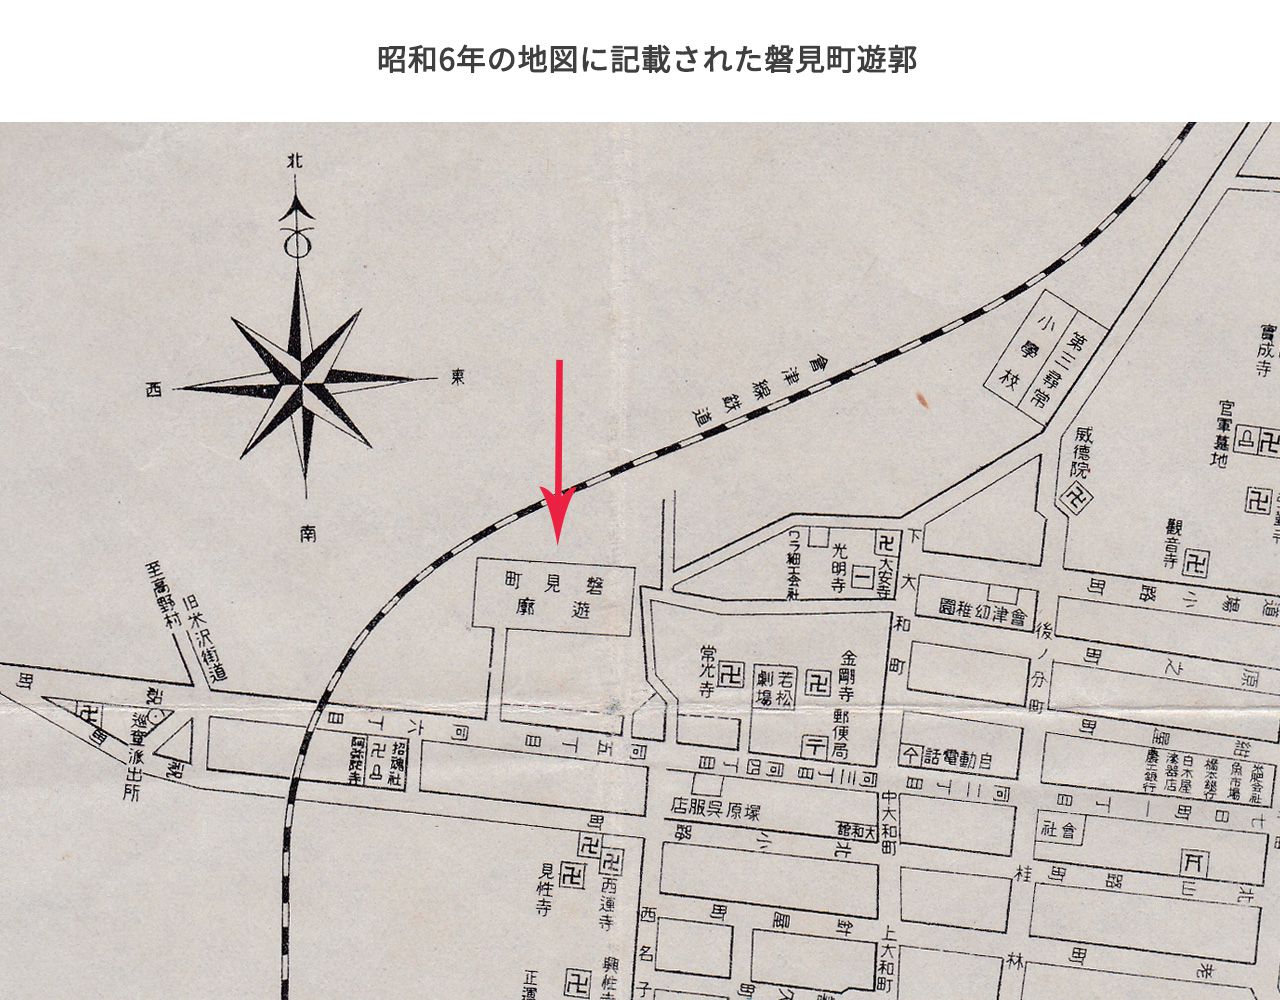 昭和6年発行の会津若松市地図でみる磐見町遊郭